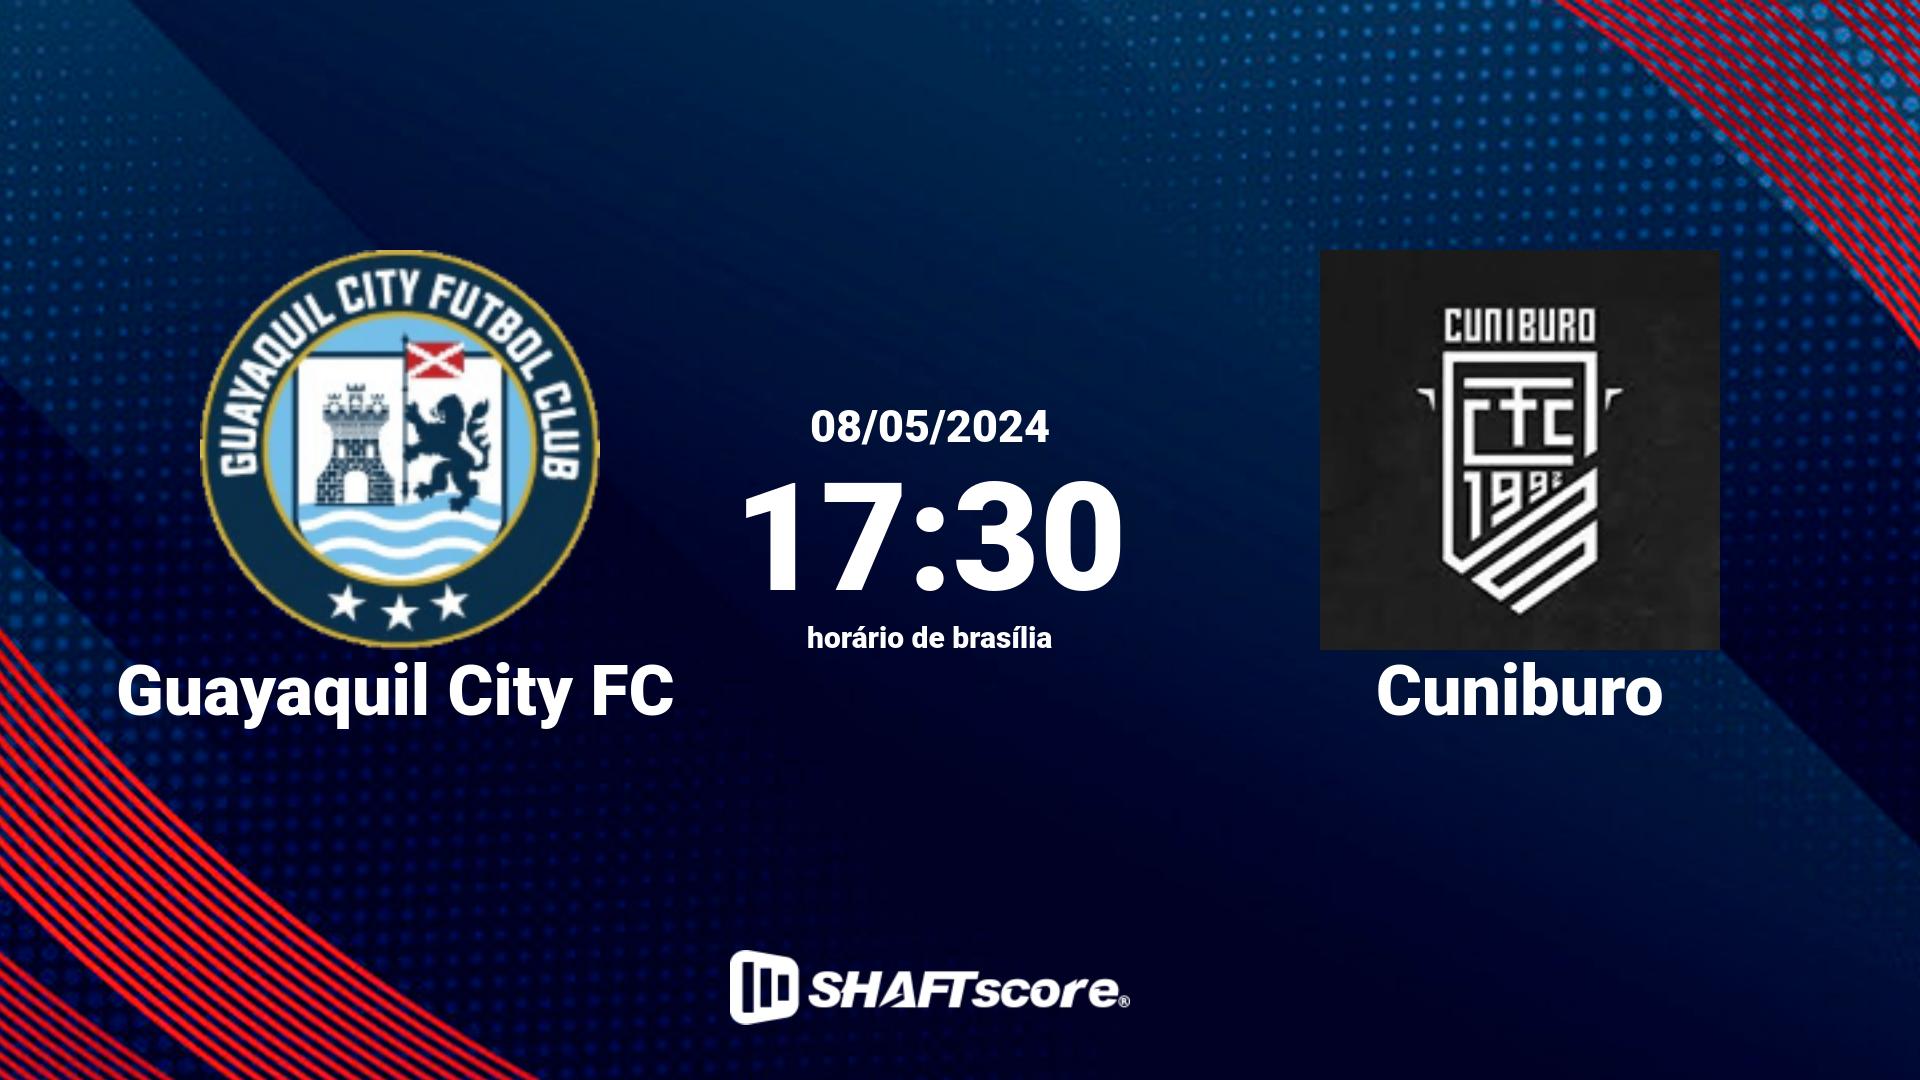 Estatísticas do jogo Guayaquil City FC vs Cuniburo 08.05 17:30